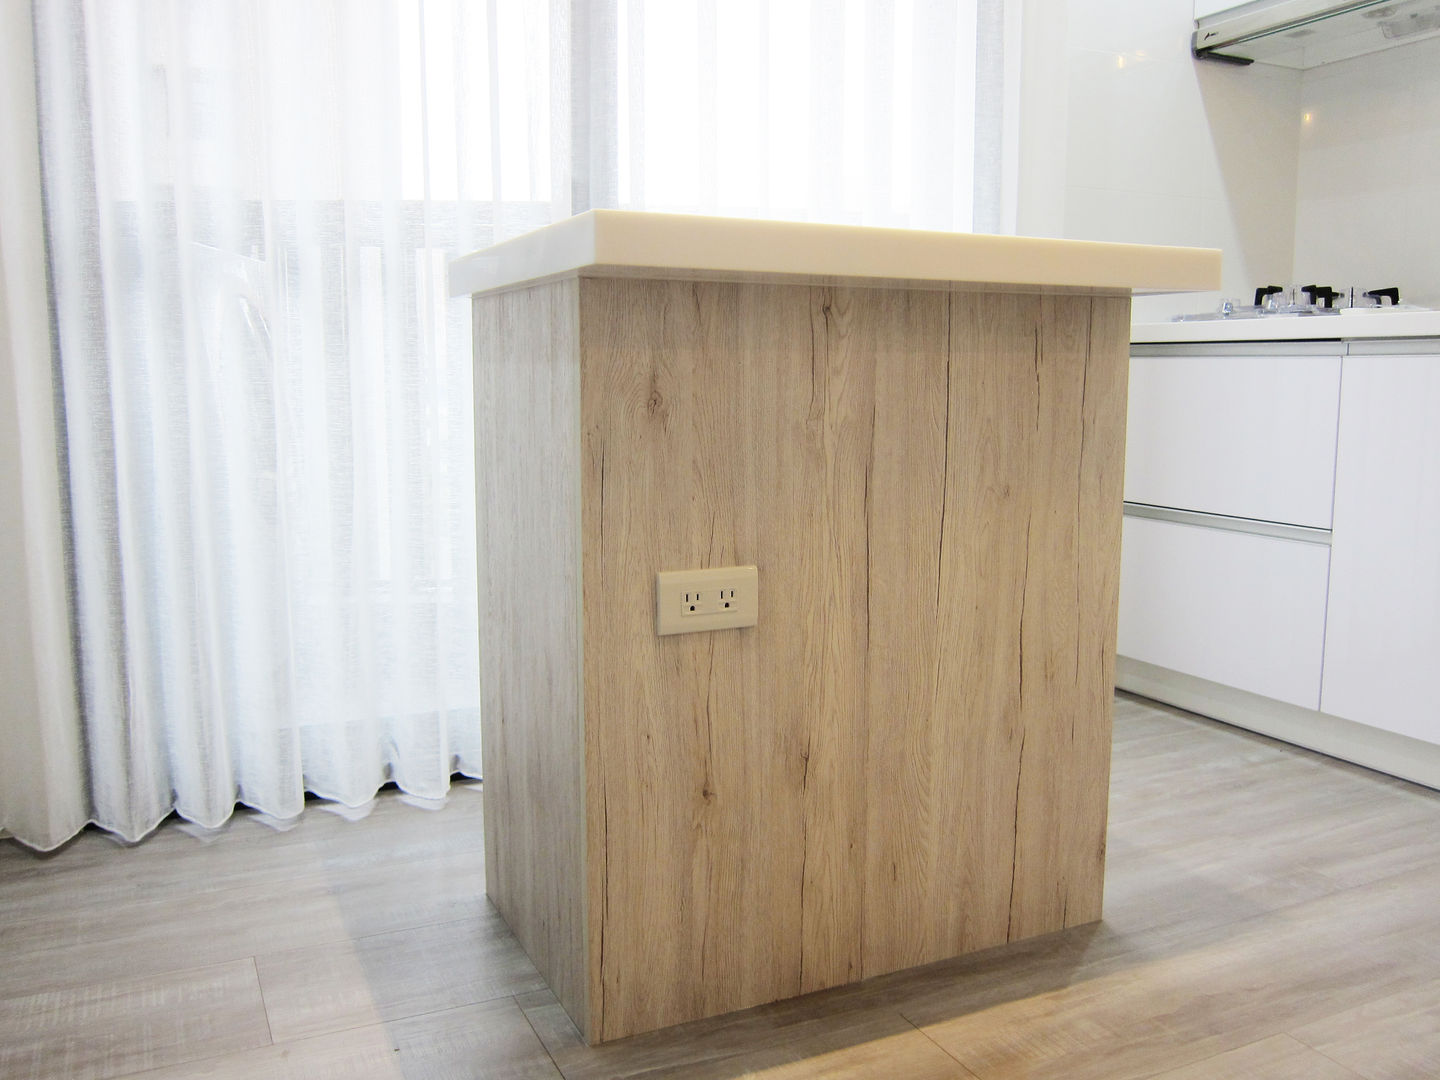 中島 ISQ 質の木系統家具 Minimalist dining room